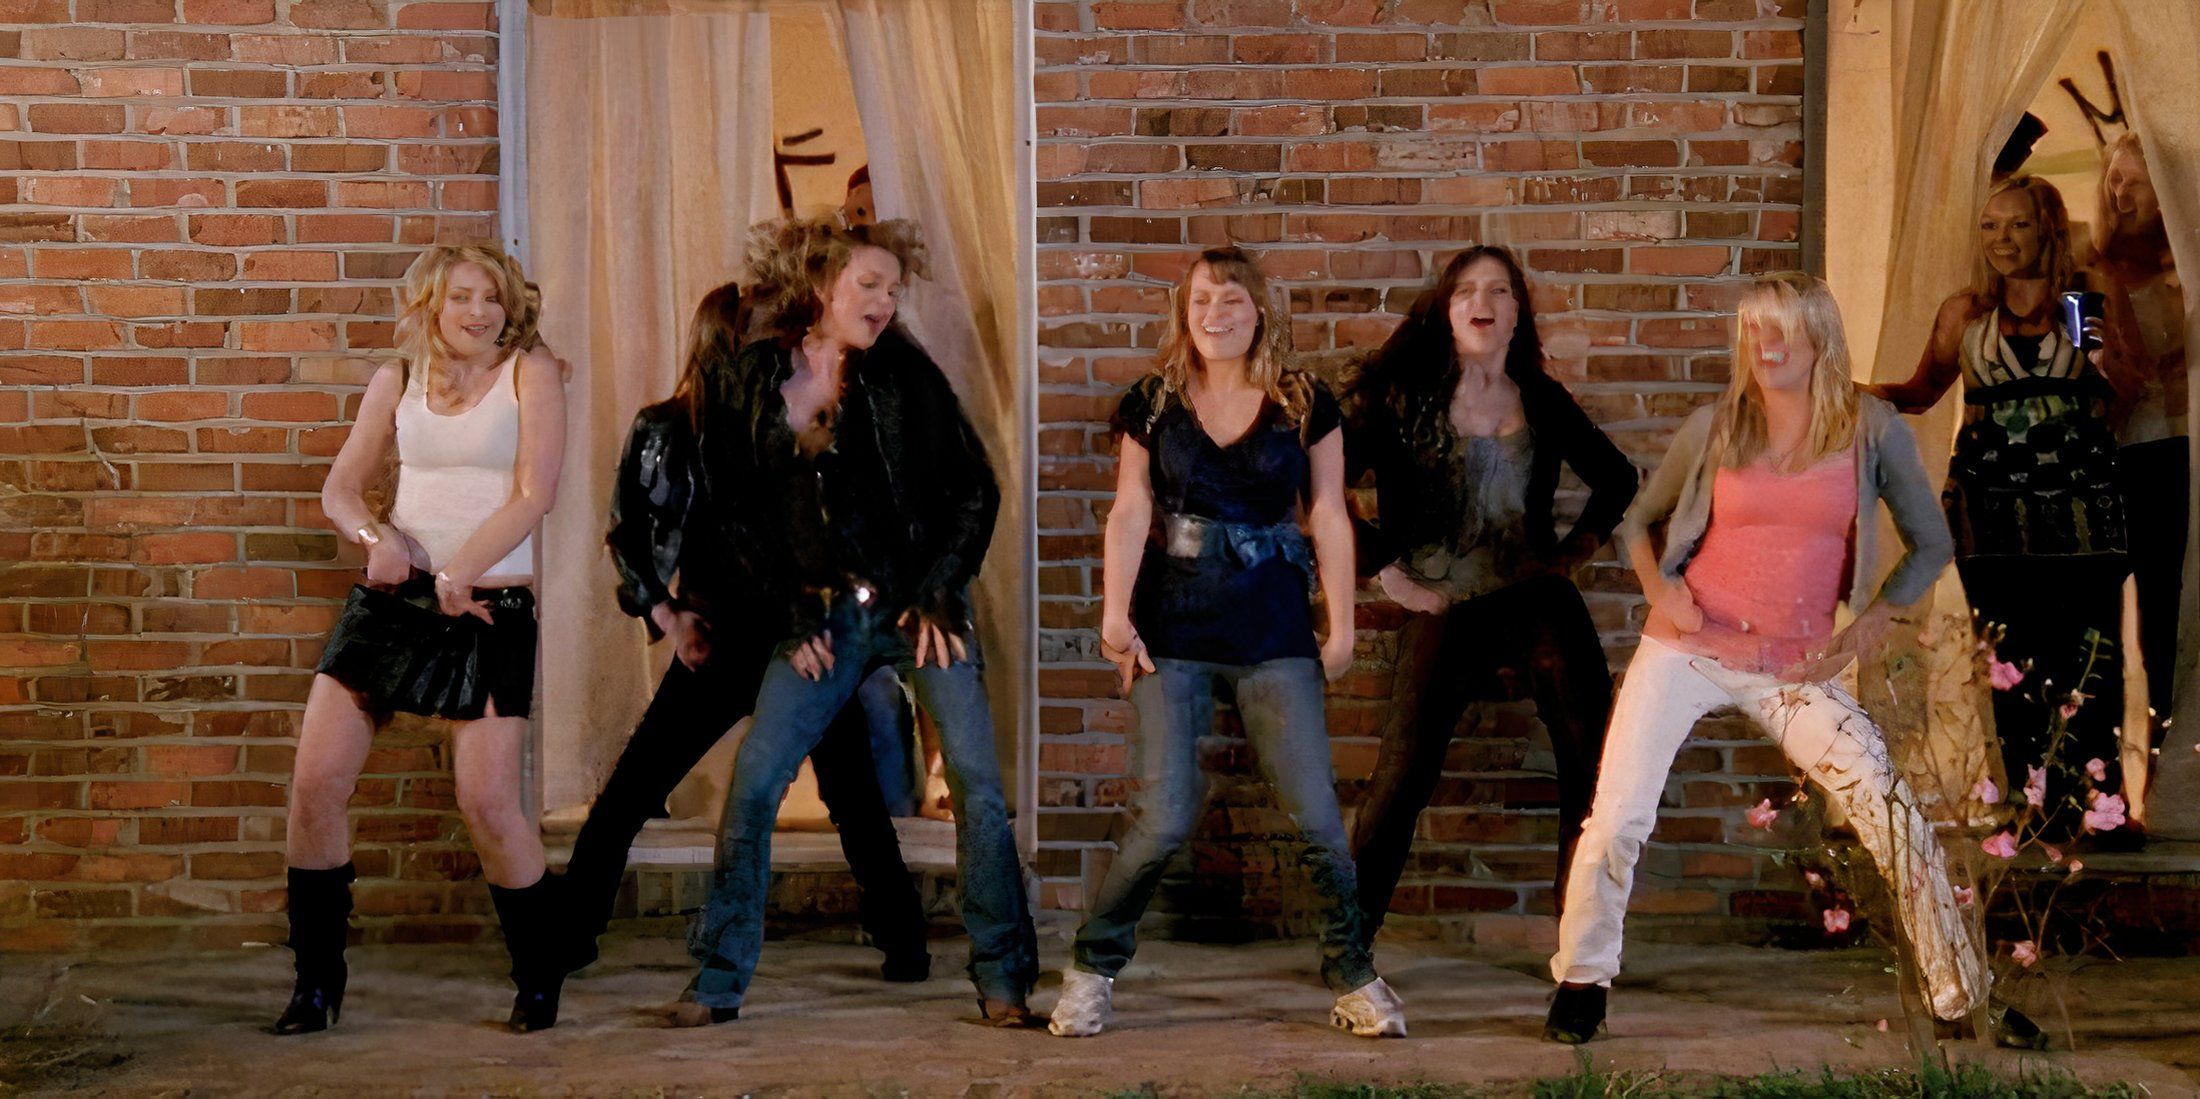 As garotas de One Treel Hill dançando uma música das Spice Girls em uma festa